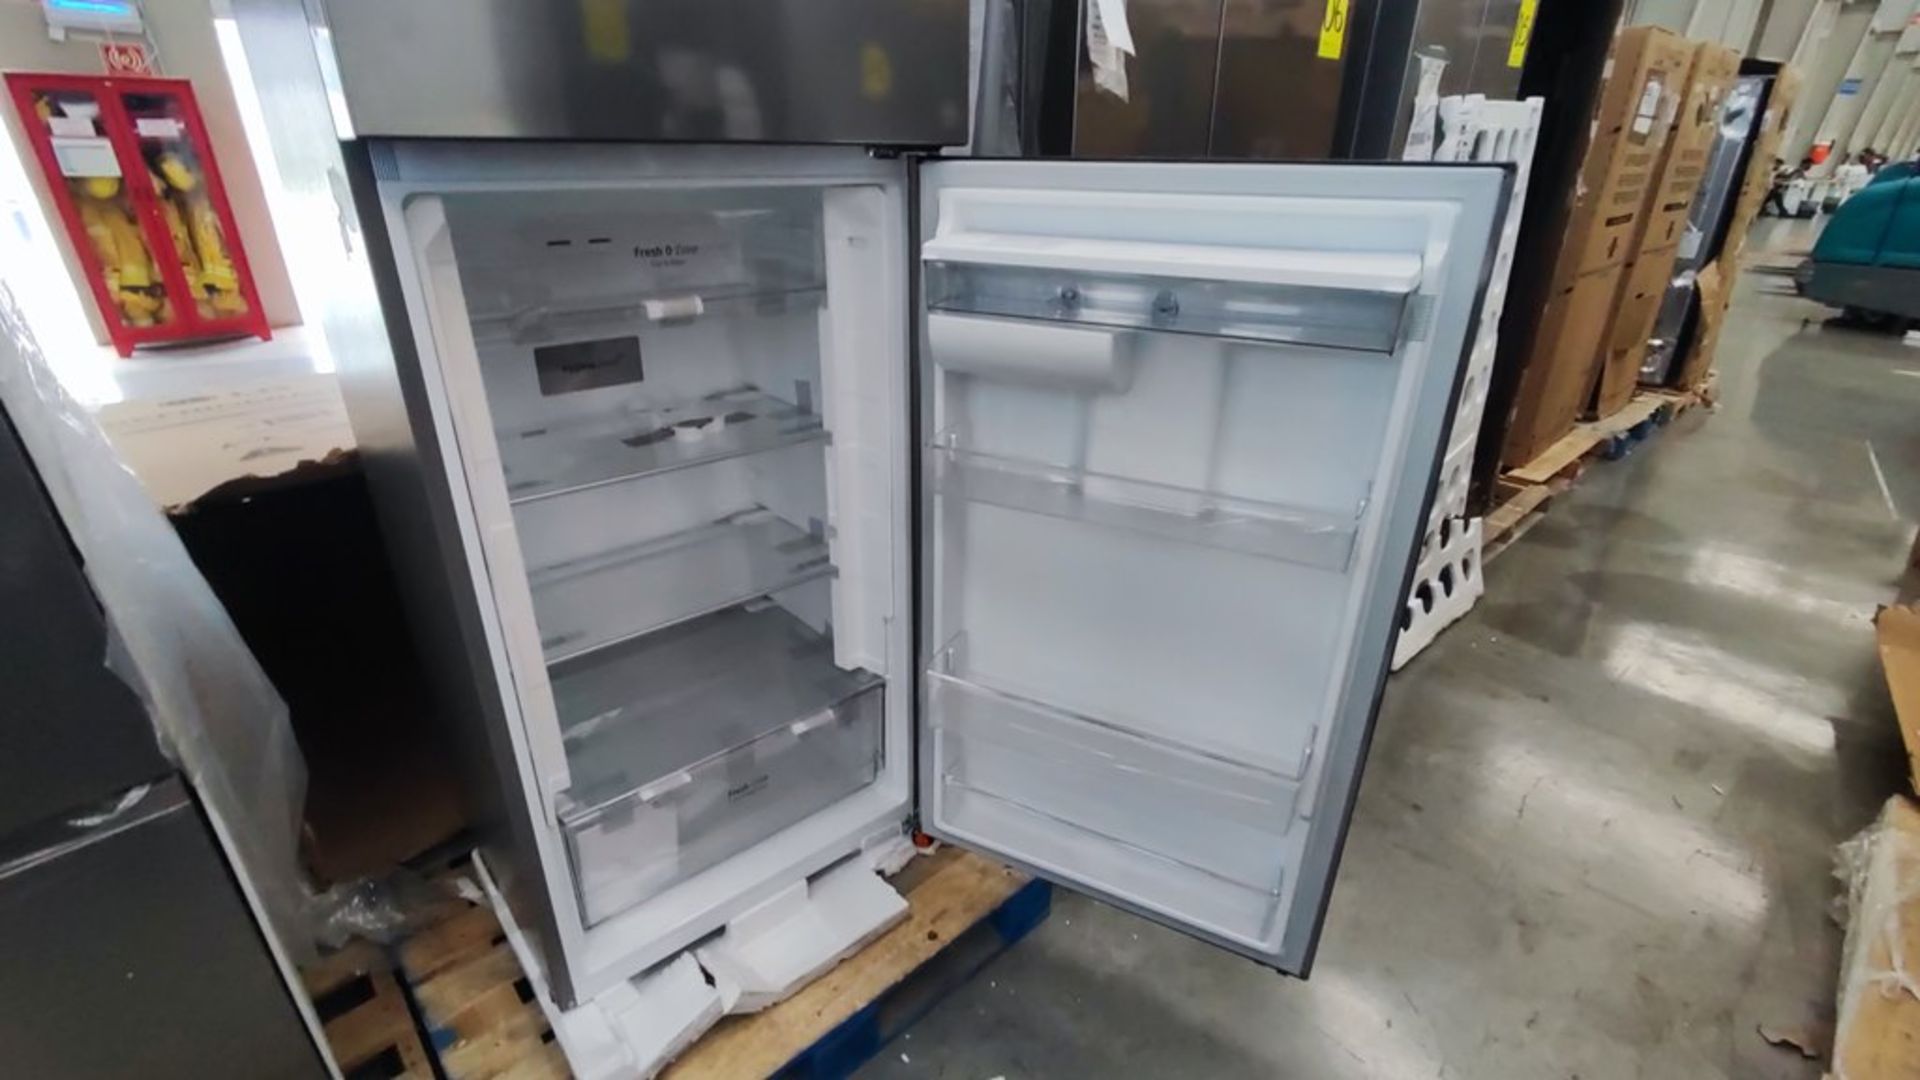 1 Refrigerador Marca LG, ModeloVT40AWP , Serie 202MRHP00649, Color Gris, Favor de inspeccionar. (No - Image 10 of 11